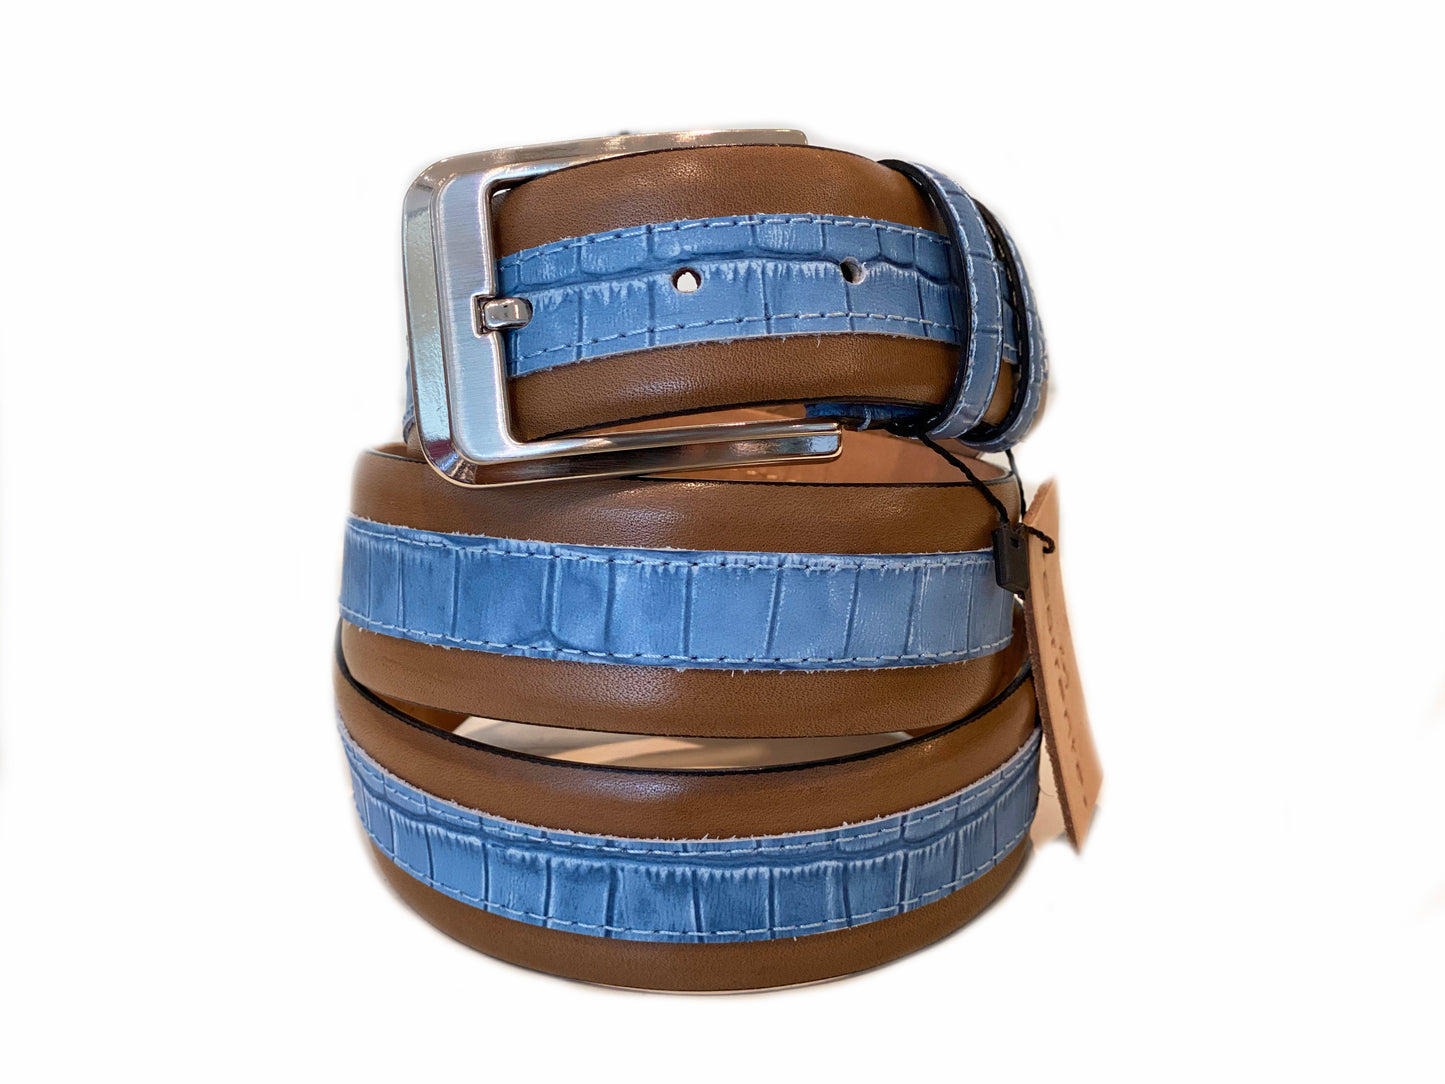 CBelt -4005HS Contrast Leather Belt - Camel-Blue